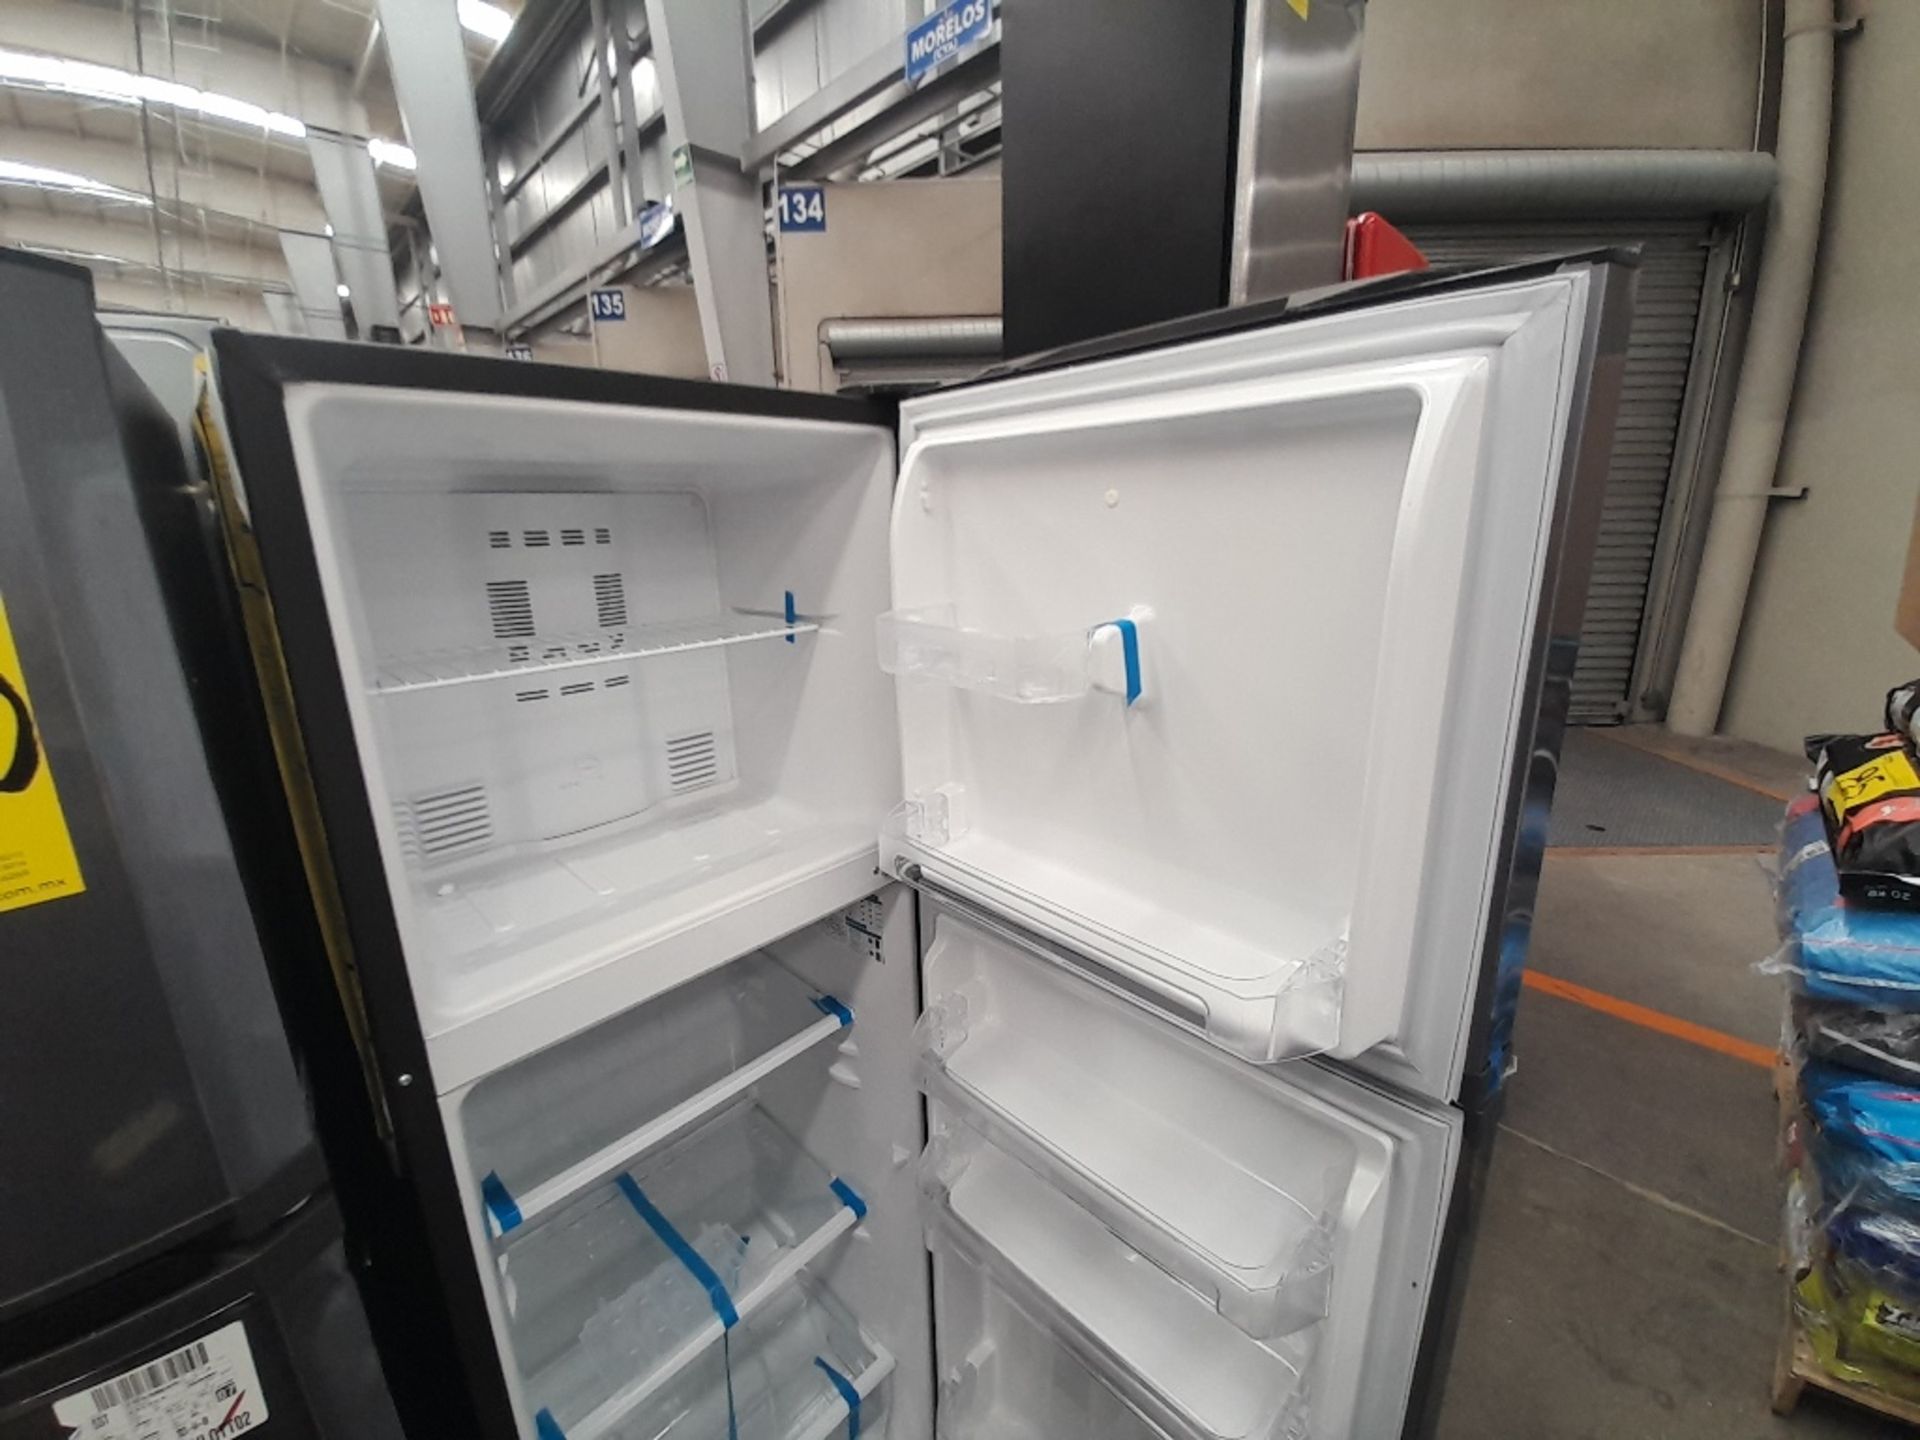 Lote de 2 refrigeradores contiene: 1 refrigerador Marca MABE, Modelo RMA250PVMR, Serie 610425, Colo - Image 6 of 8